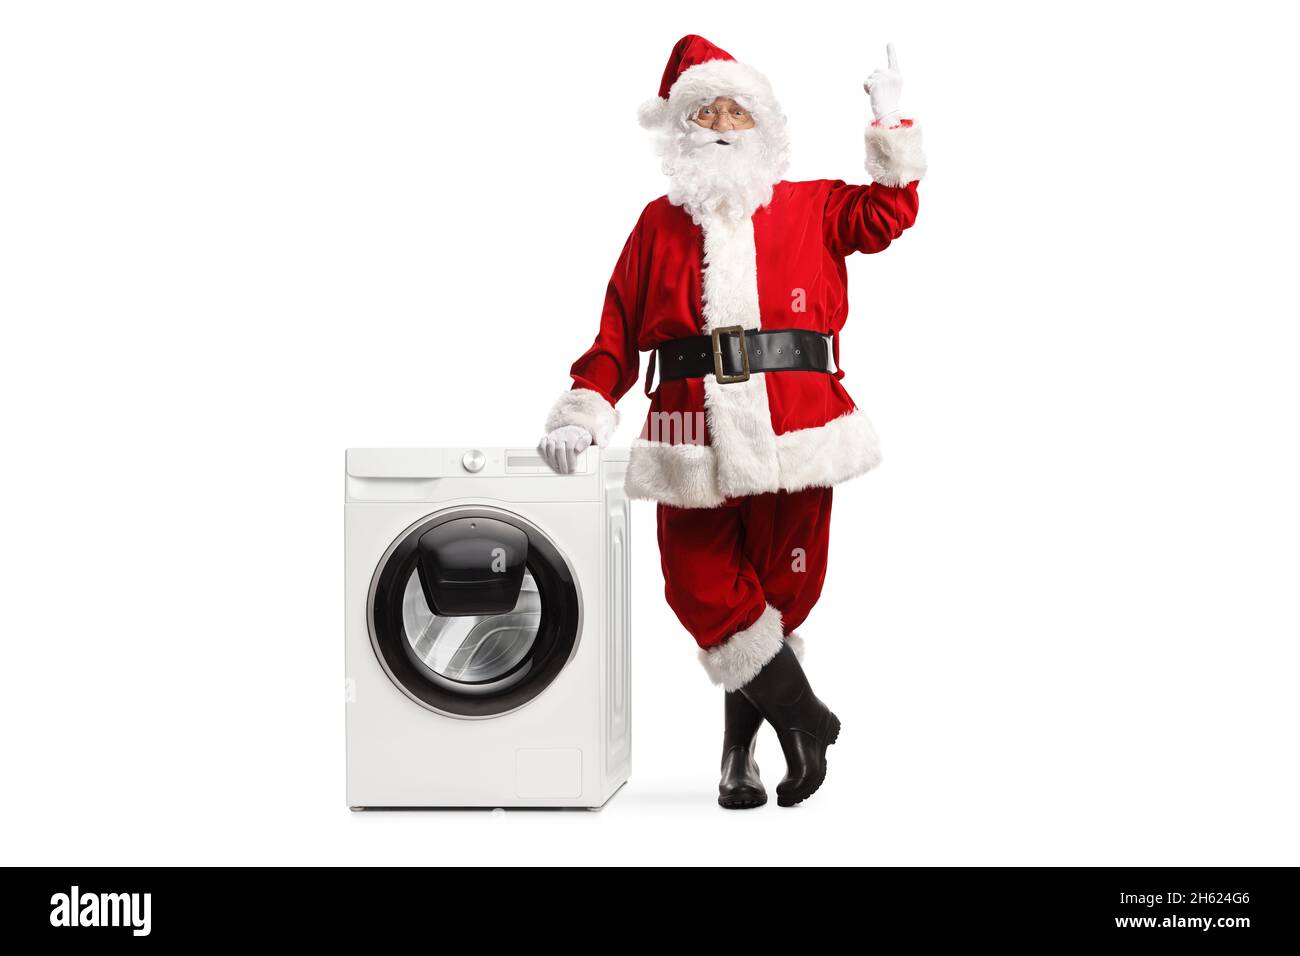 Rote waschmaschine Ausgeschnittene Stockfotos und -bilder - Alamy